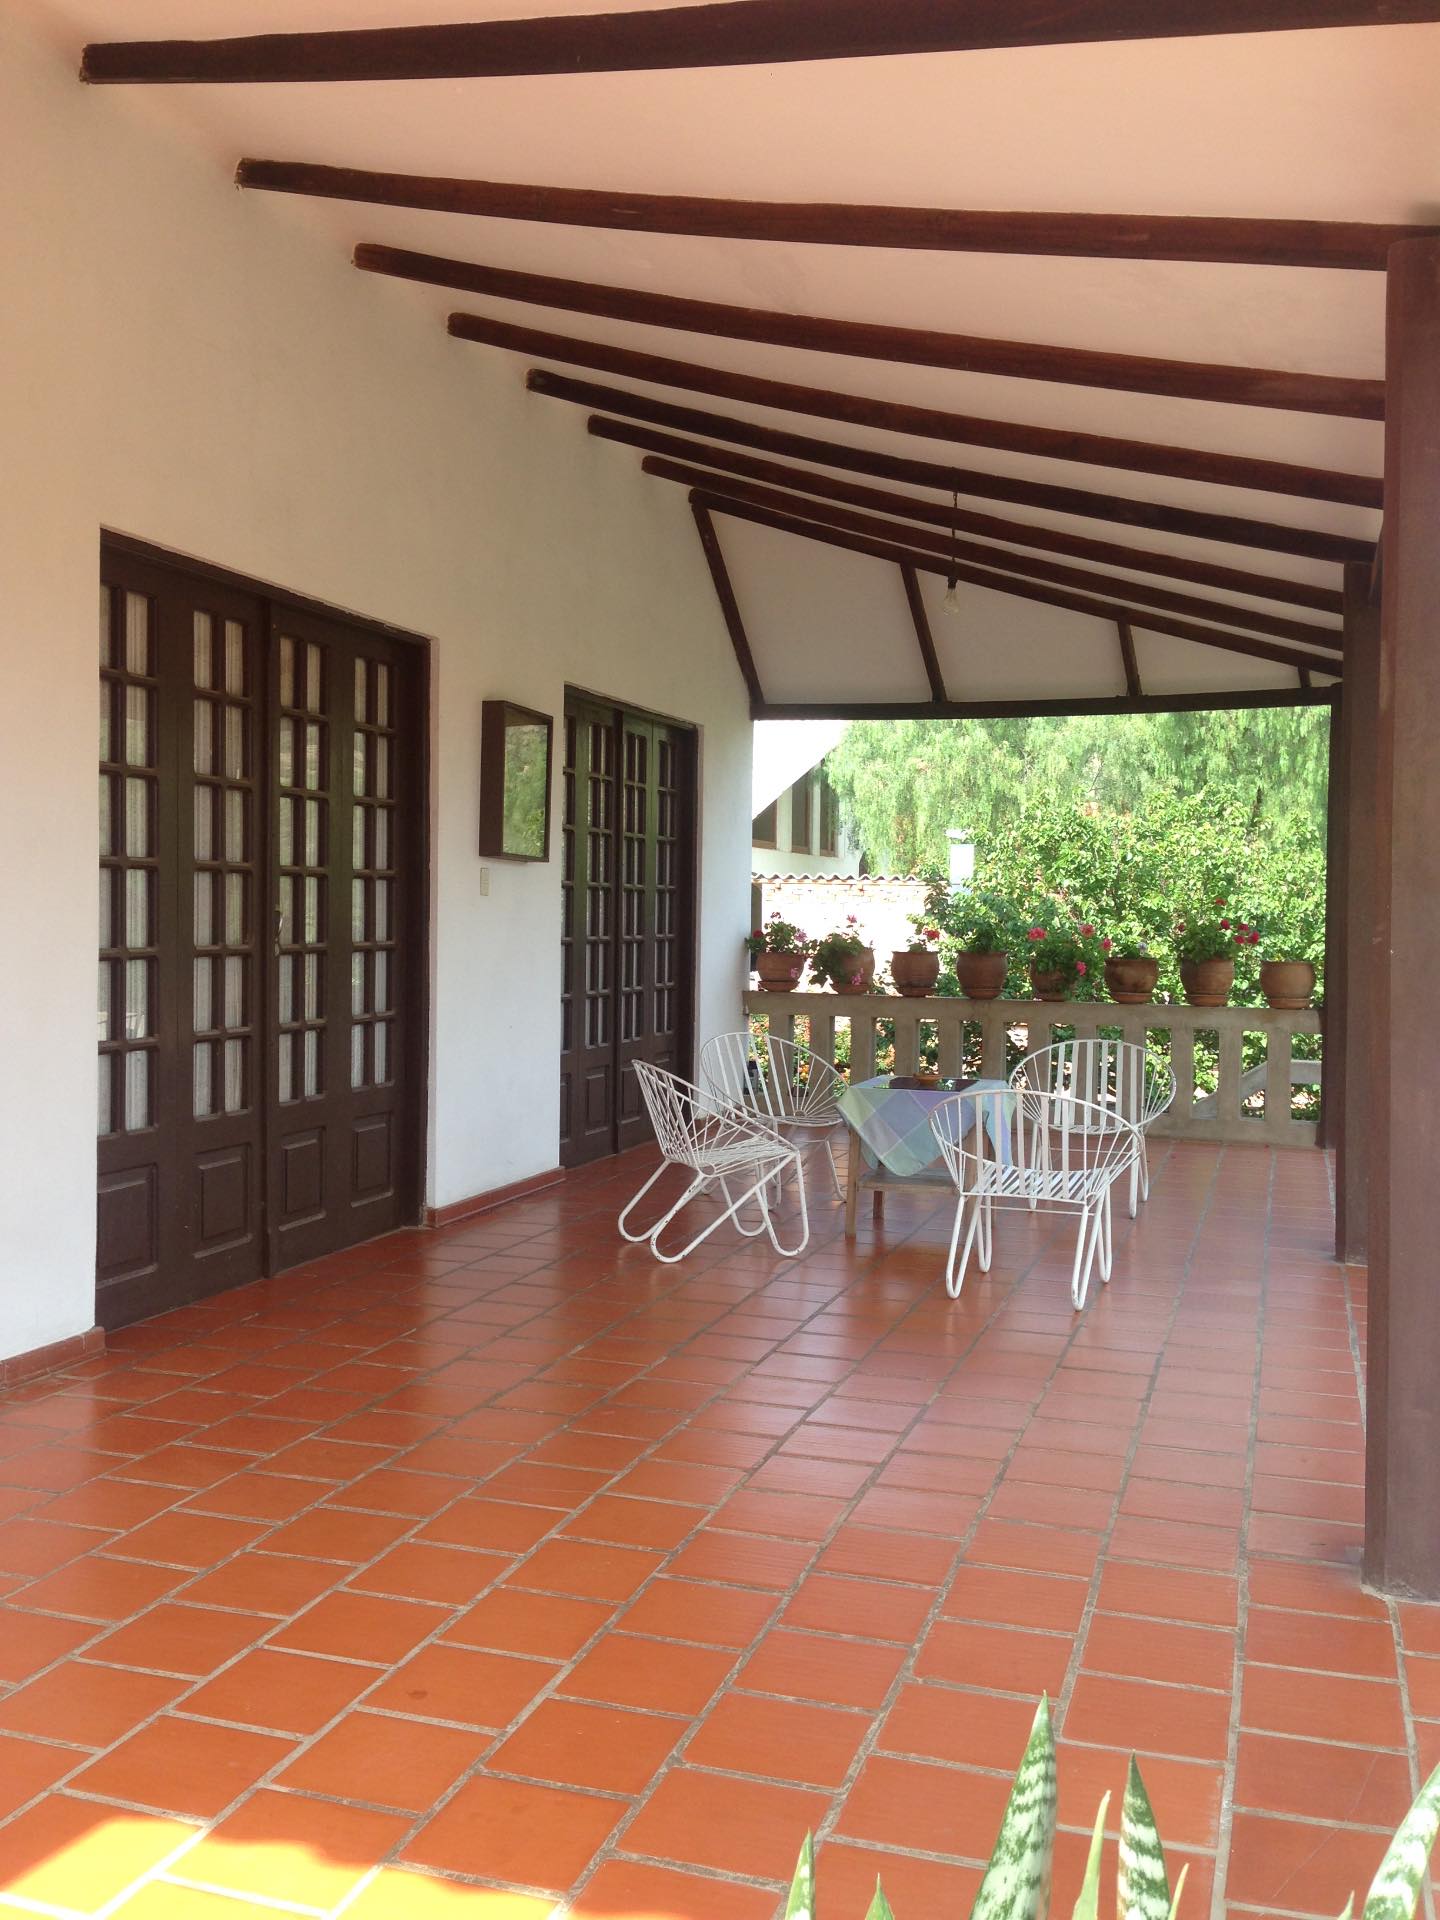 Casa en VentaMolle Mayu a 20 minutos de Sucre camino al aeropuerto de Alcantati del peaje de Cochis 2 km. A la derecha hacia Totacoa Foto 12